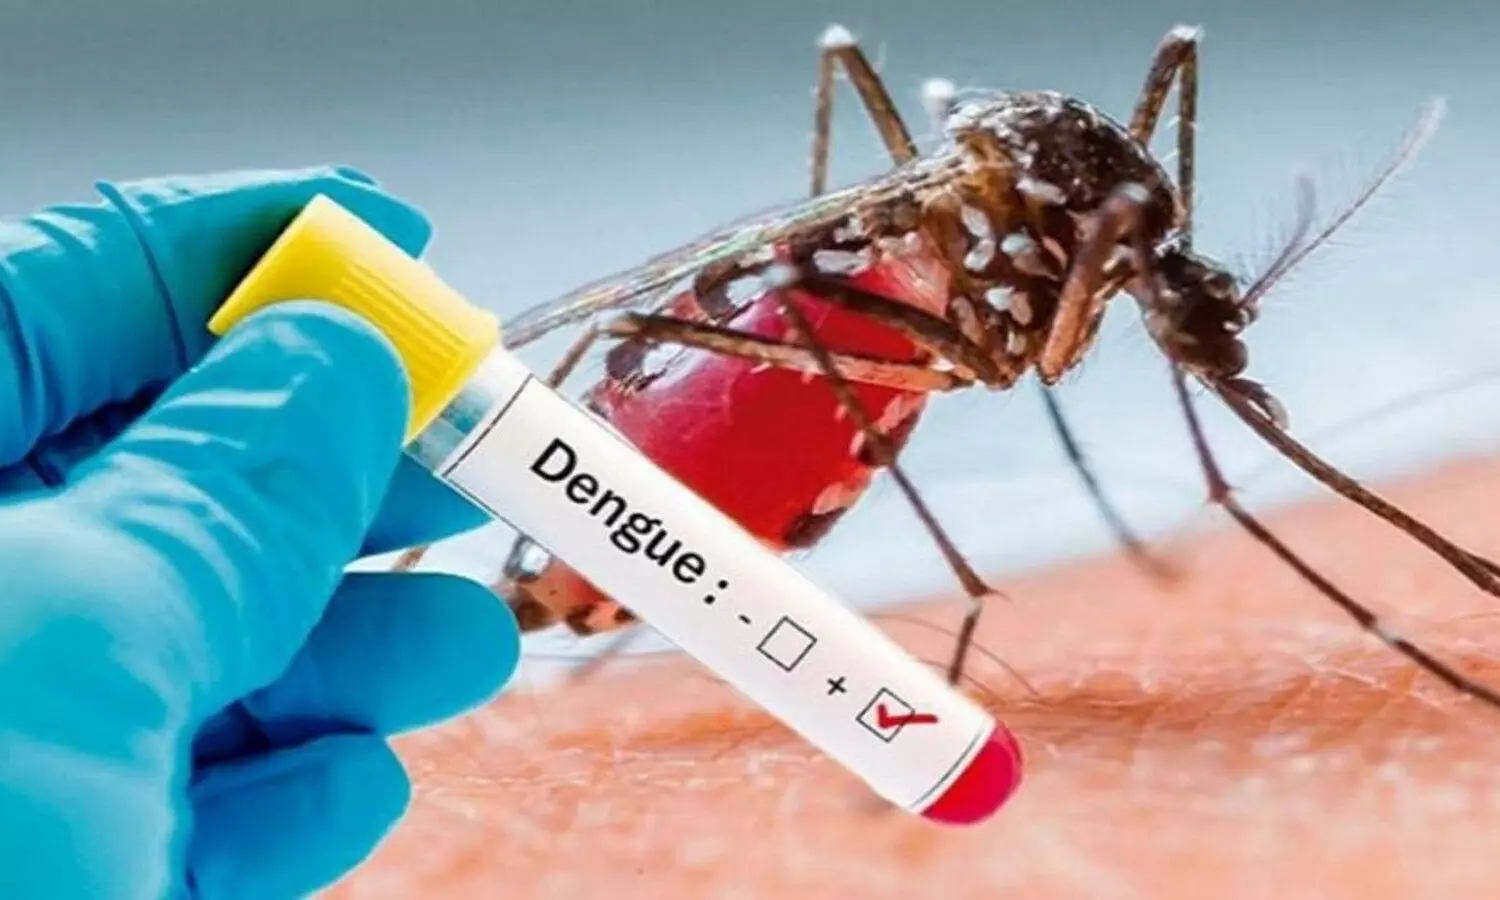 Dengue News